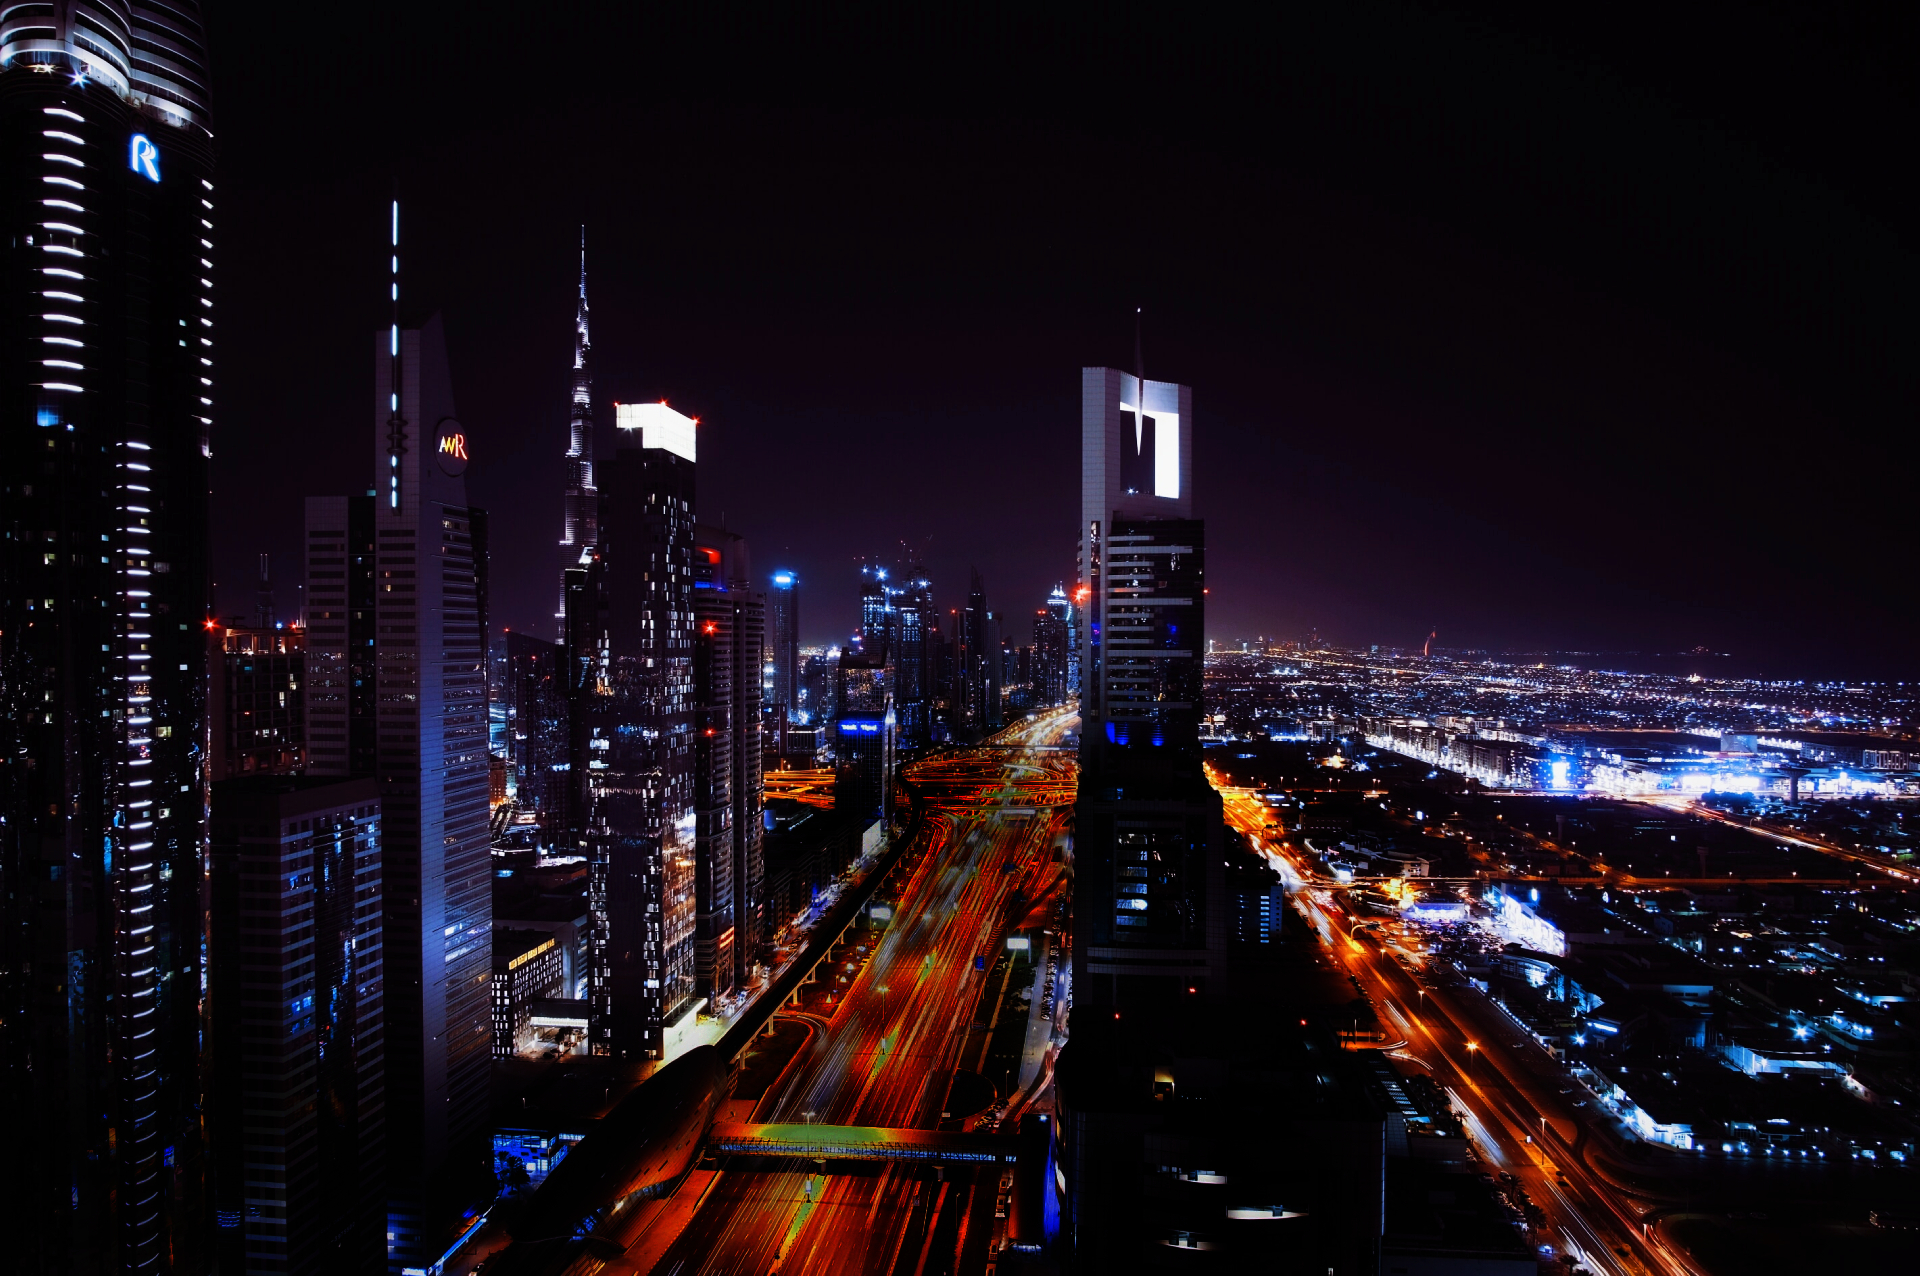 Sheikh Zayed Road In Dubai, U.A.E, Nine Square